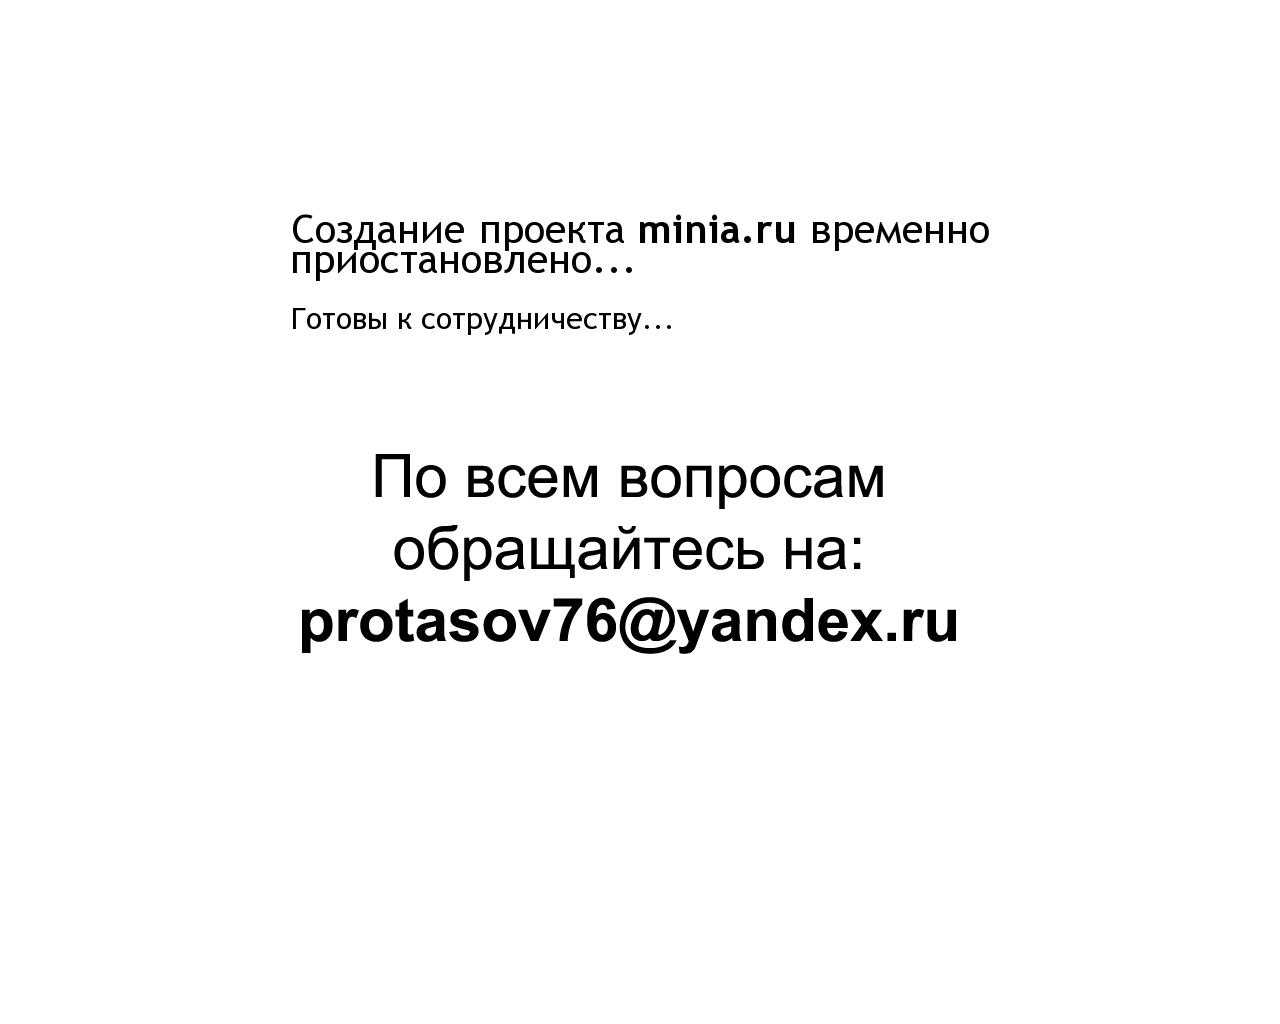 Изображение сайта minia.ru в разрешении 1280x1024